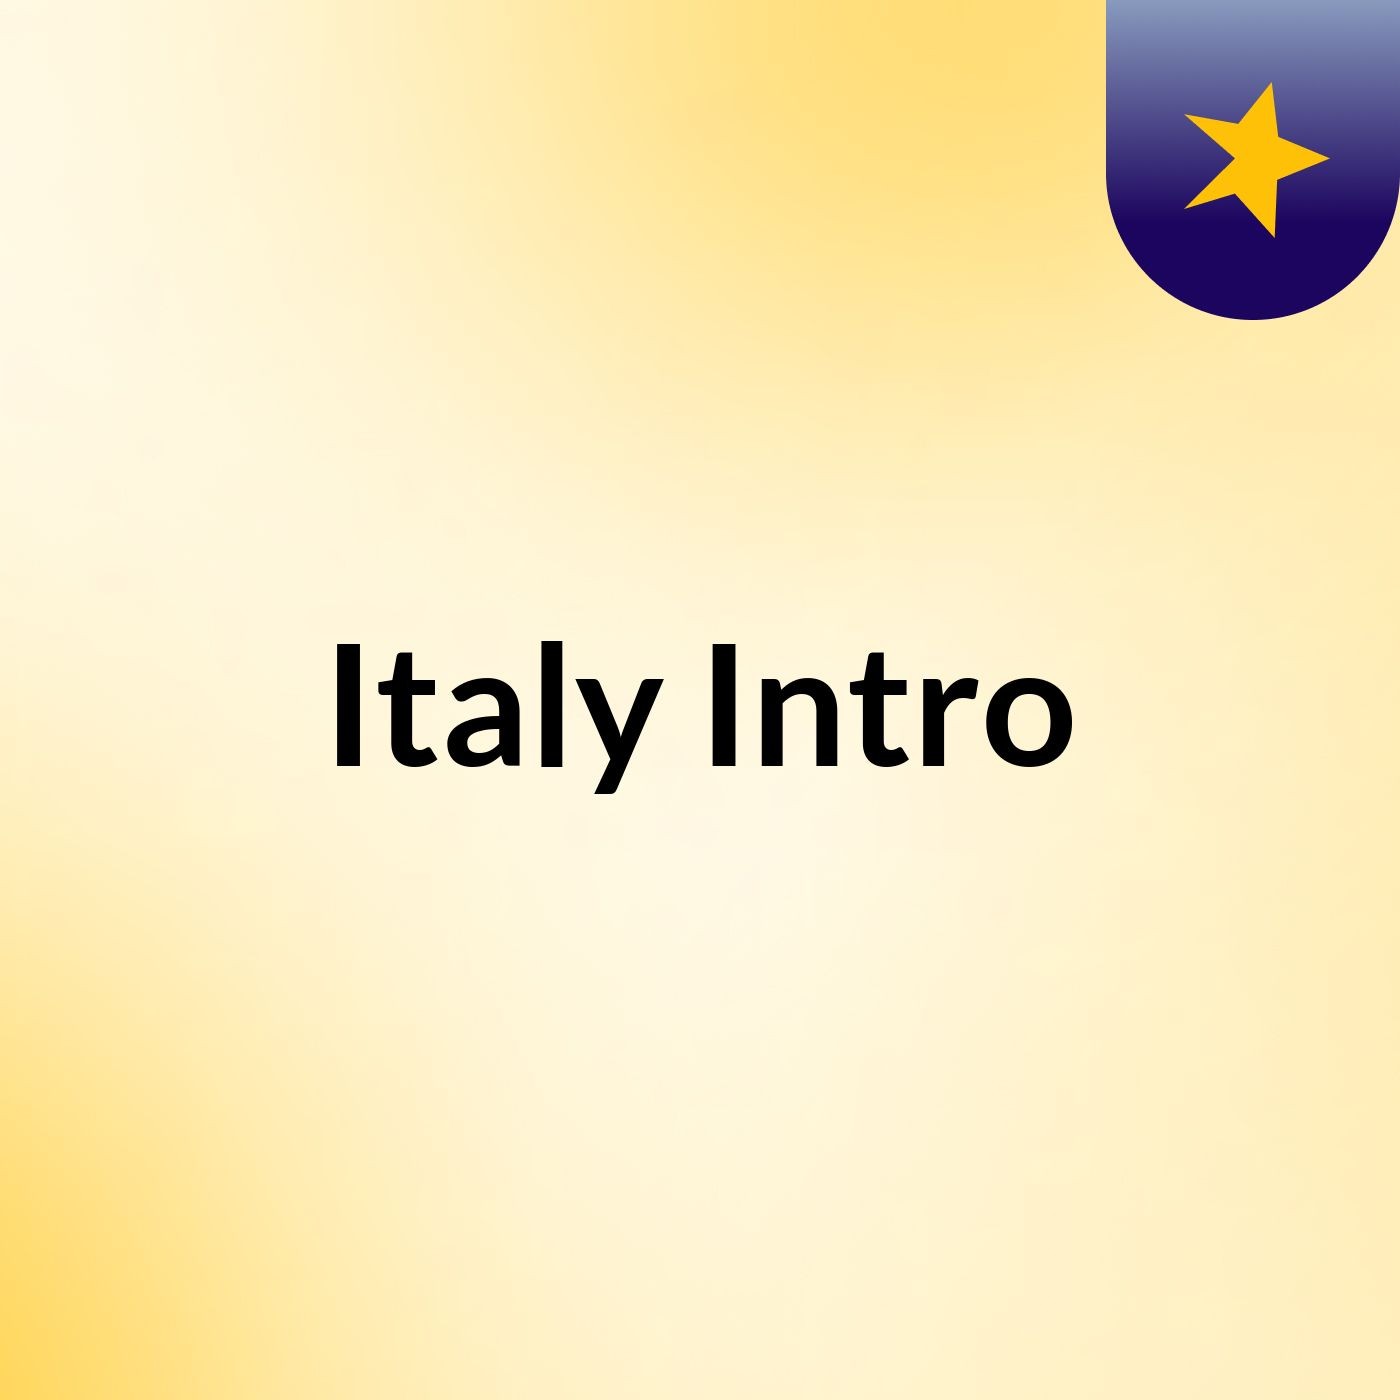 Italy Intro